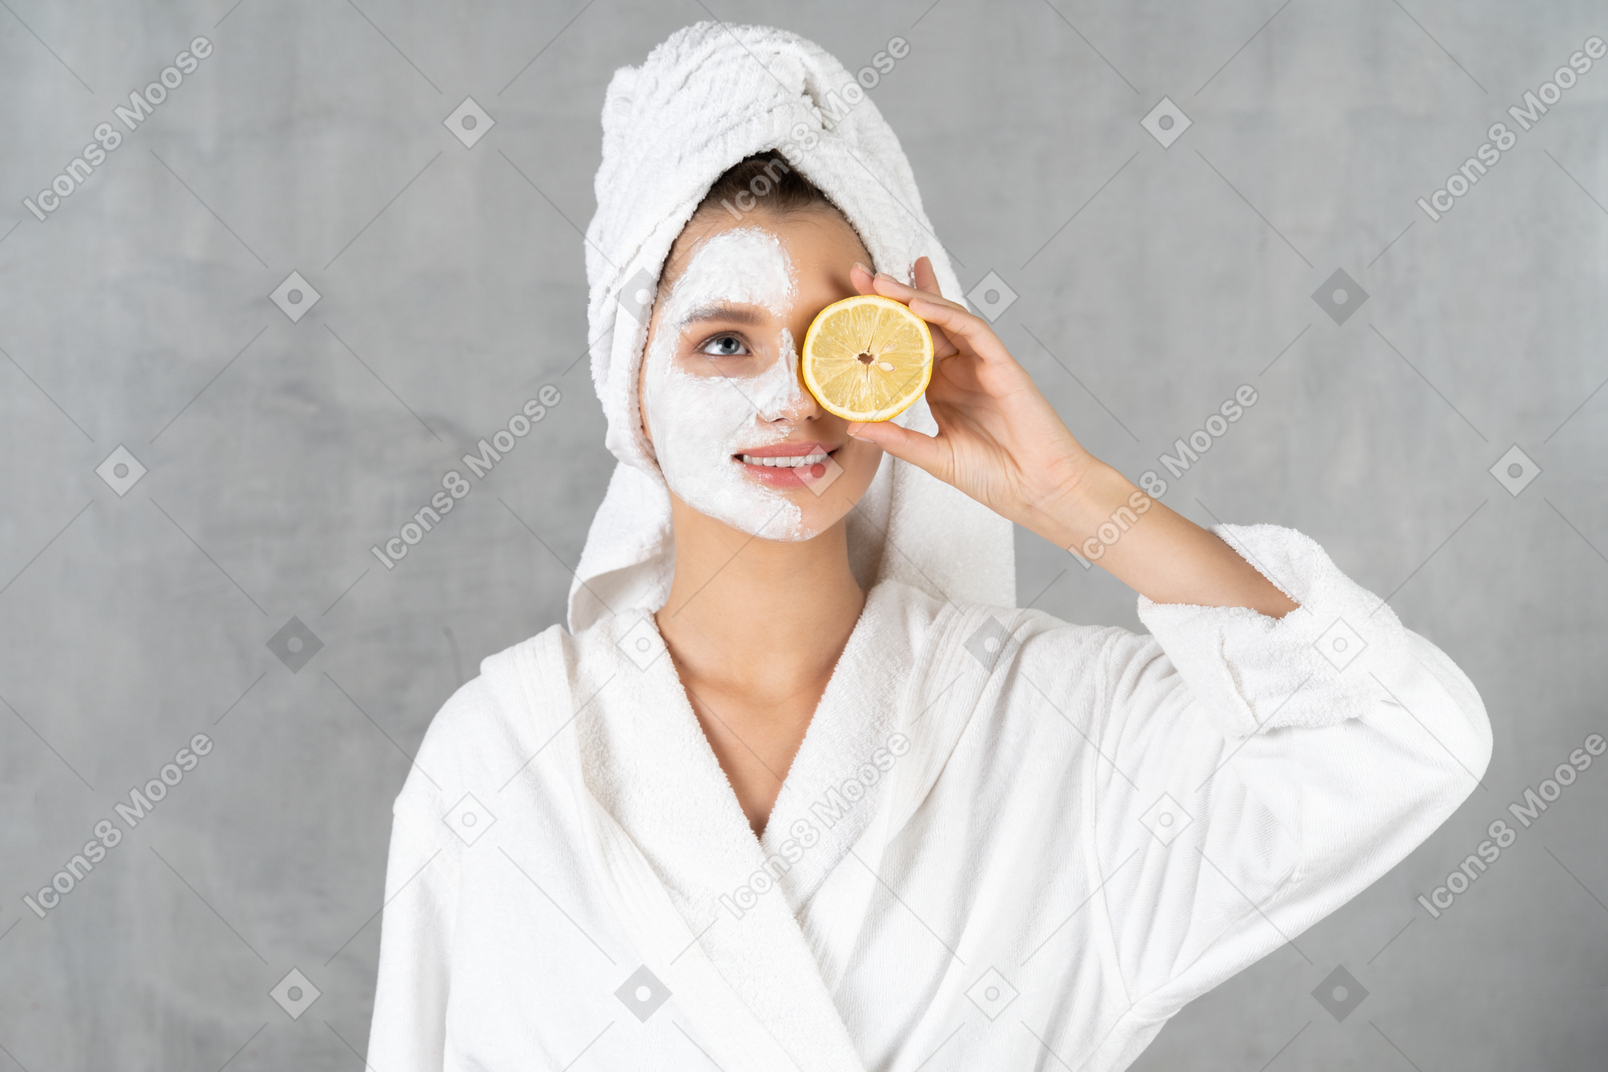 Smiling woman in bathrobe holding a lemon over her eye